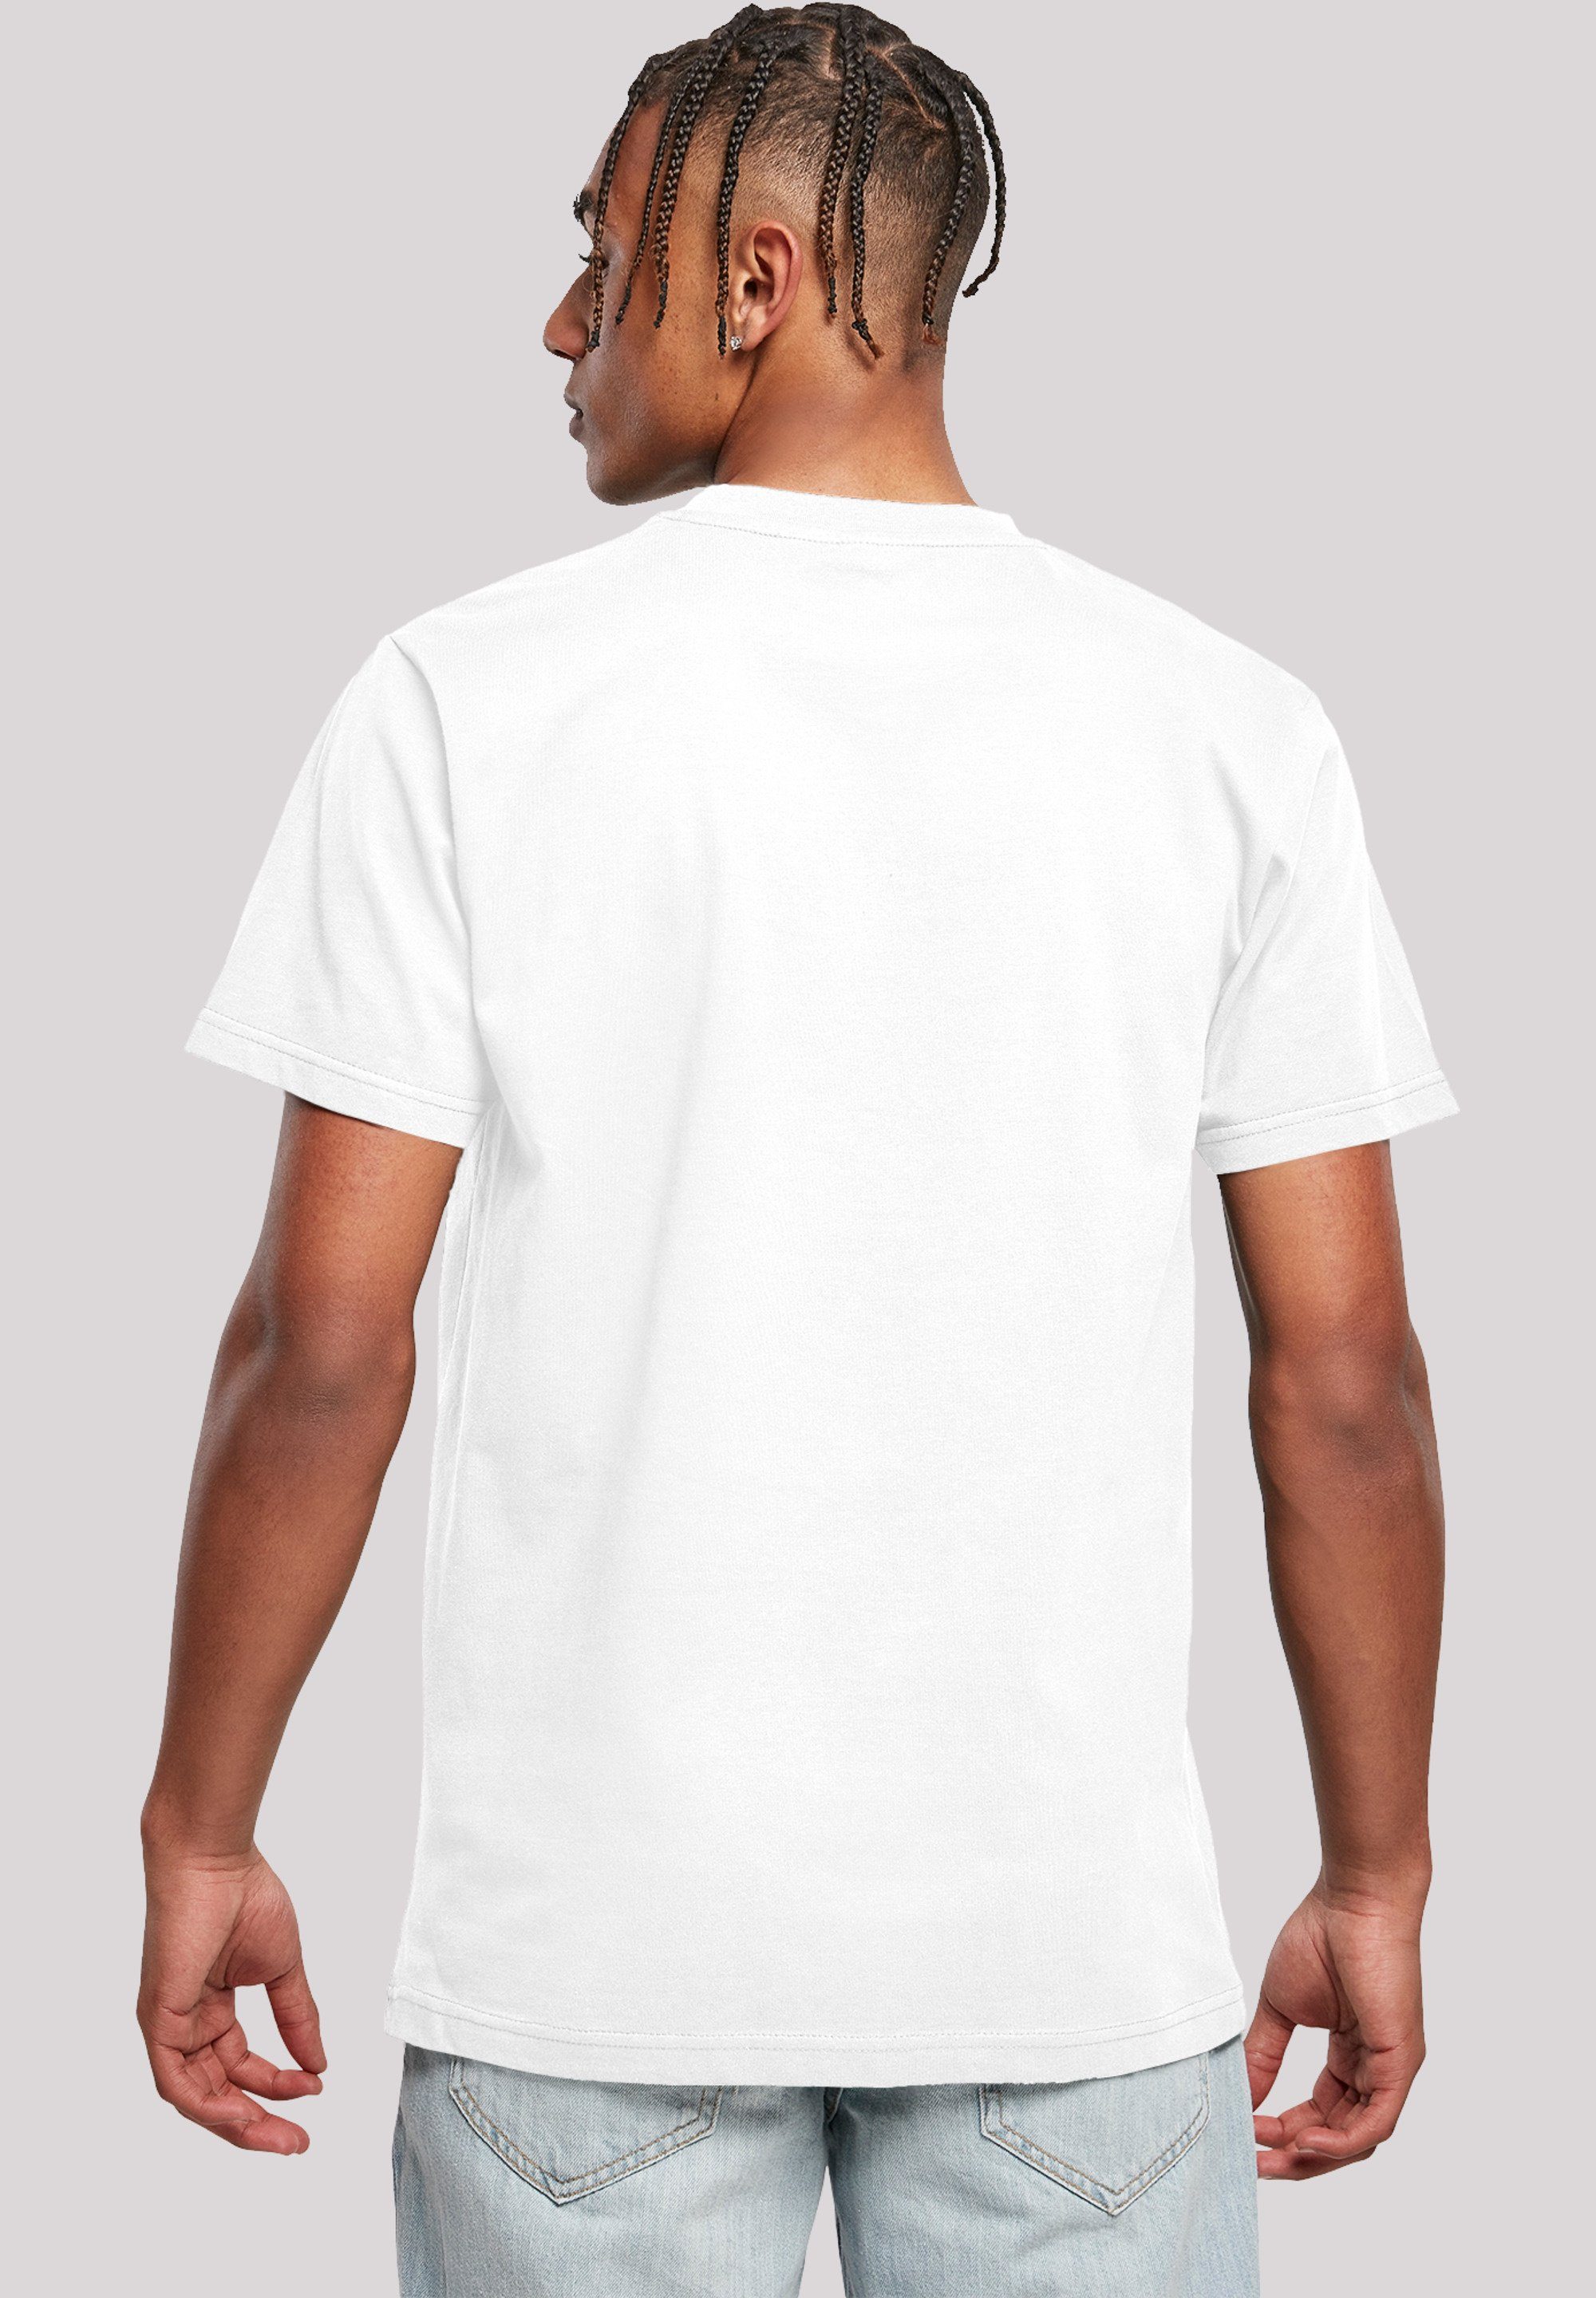 F4NT4STIC T-Shirt Tom und Prank Merch,Regular-Fit,Basic,Bedruckt weiß Rocket Jerry Herren,Premium